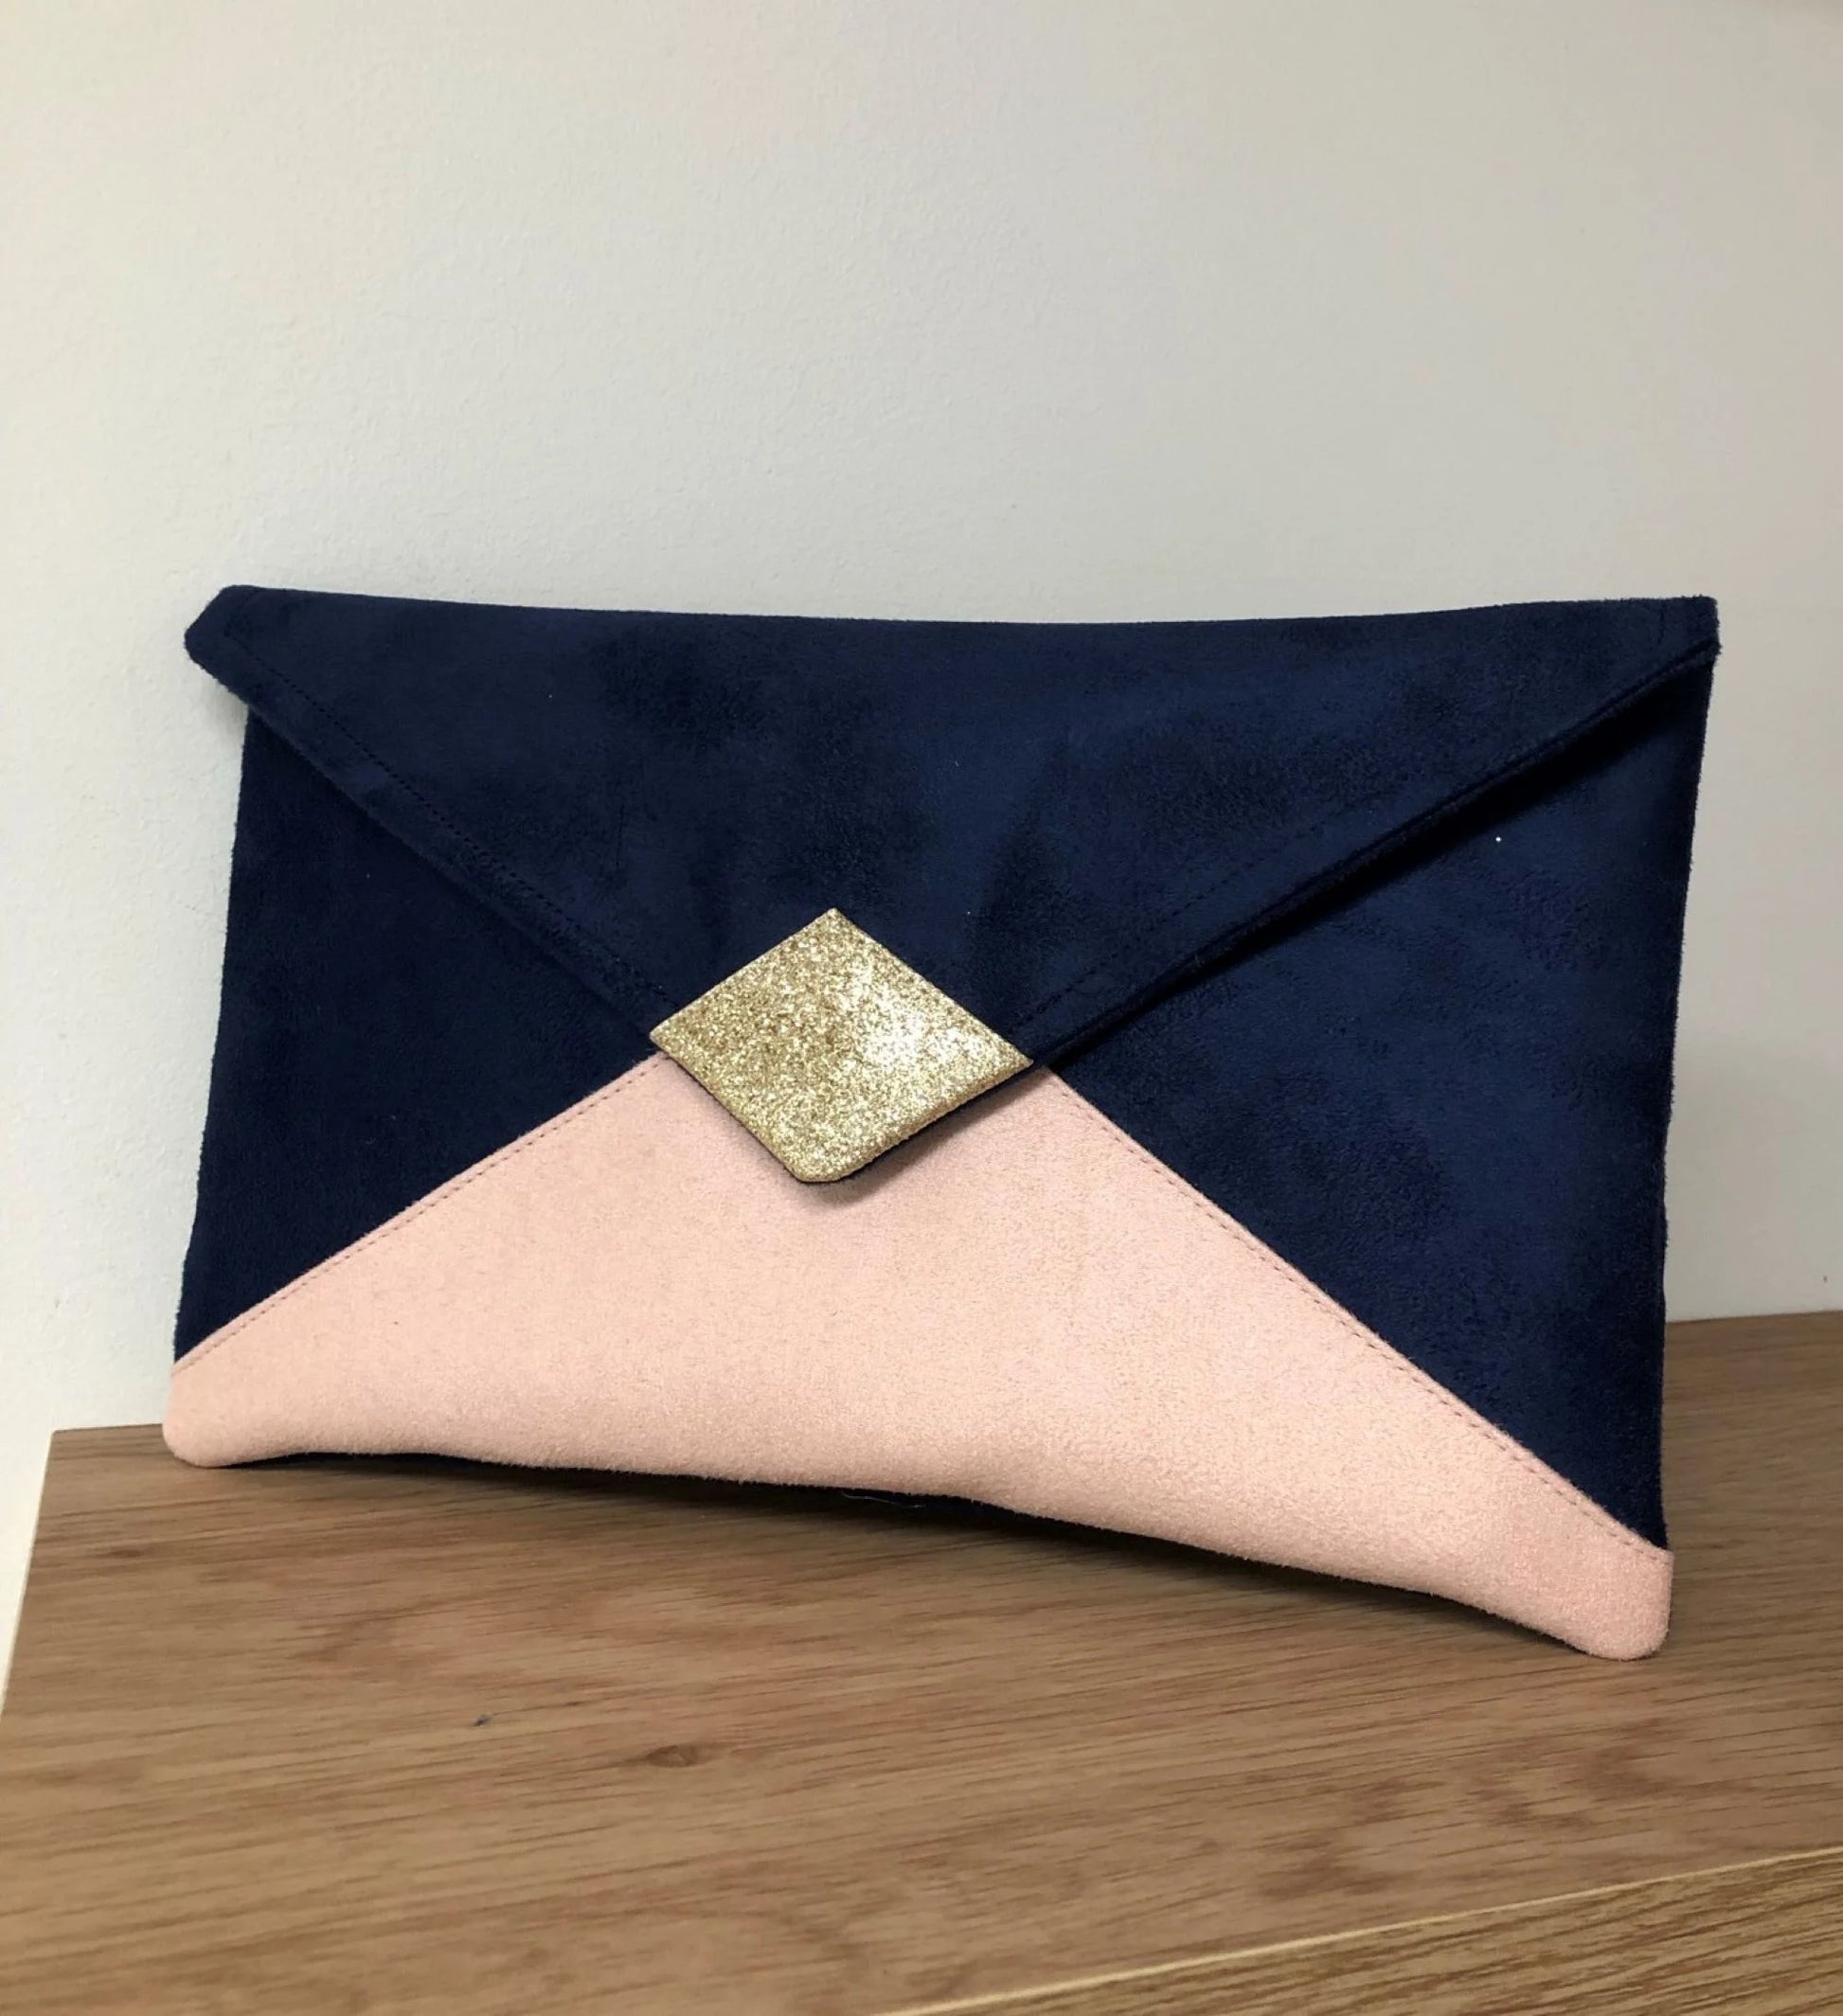 Le sac pochette Isa bleu marine et rose poudré à paillettes dorées, sans chainette amovible.